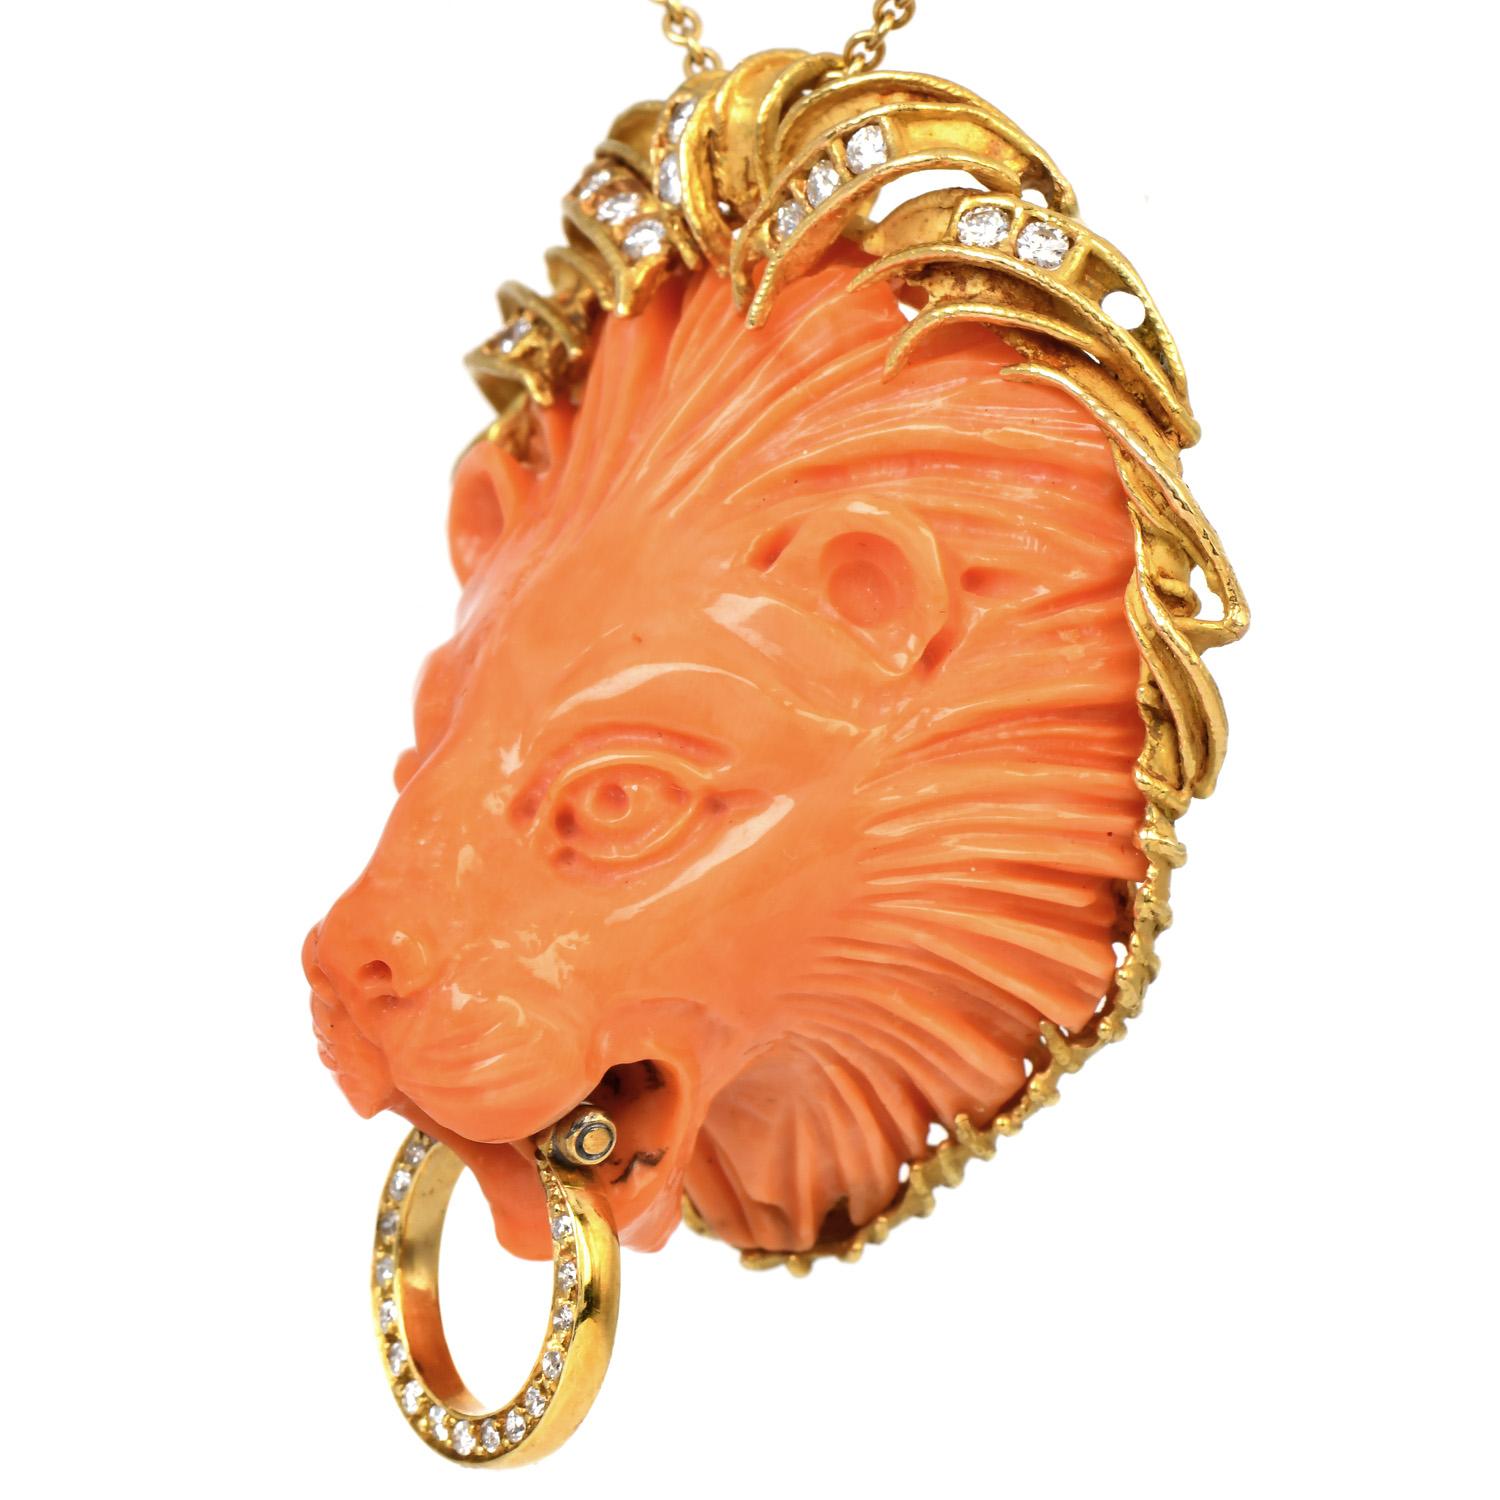 Profitez de ce chef-d'œuvre de l'époque des années 1970. Le lion symbolise la majesté, le courage, la force et la sensualité. Ce pendentif Cocktail Tête de Lion en corail, à la sculpture exquise, est encadré d'un or jaune 18k. 

Ce pendentif est